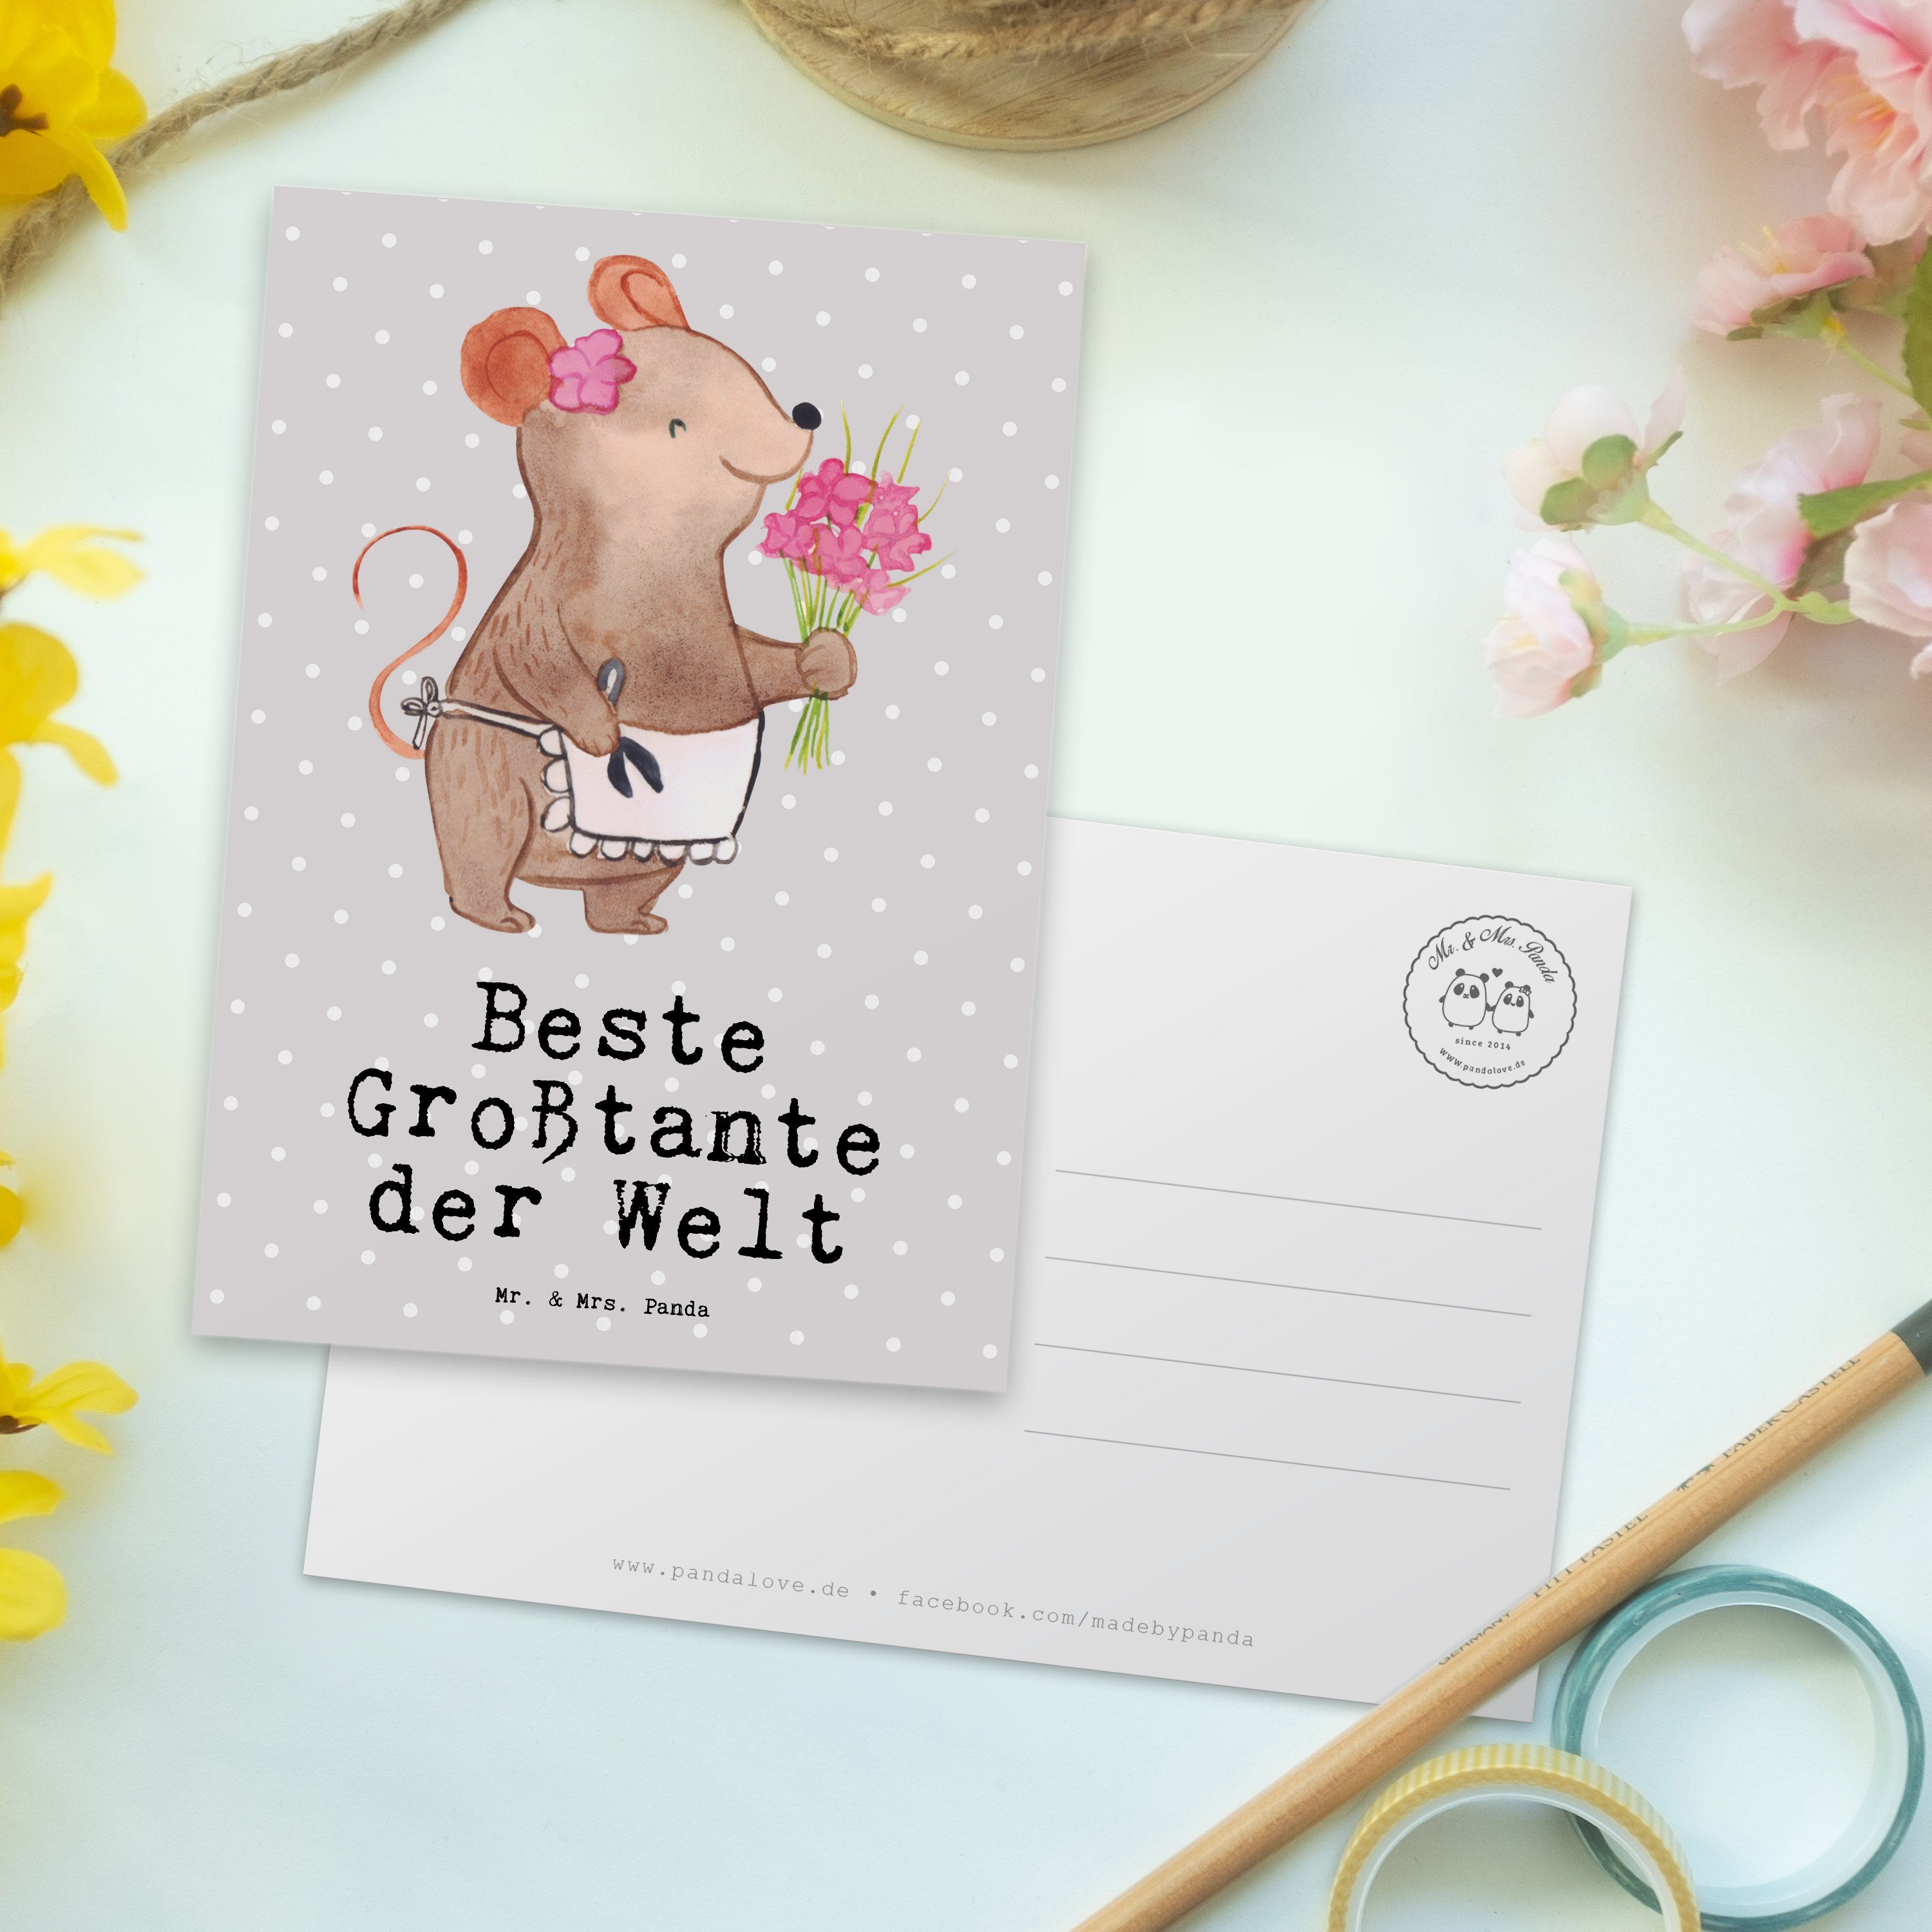 Mr. & Großtante Beste Pastell Ansichtskart der Grau Panda Maus Postkarte Geschenk, Welt Mrs. - 